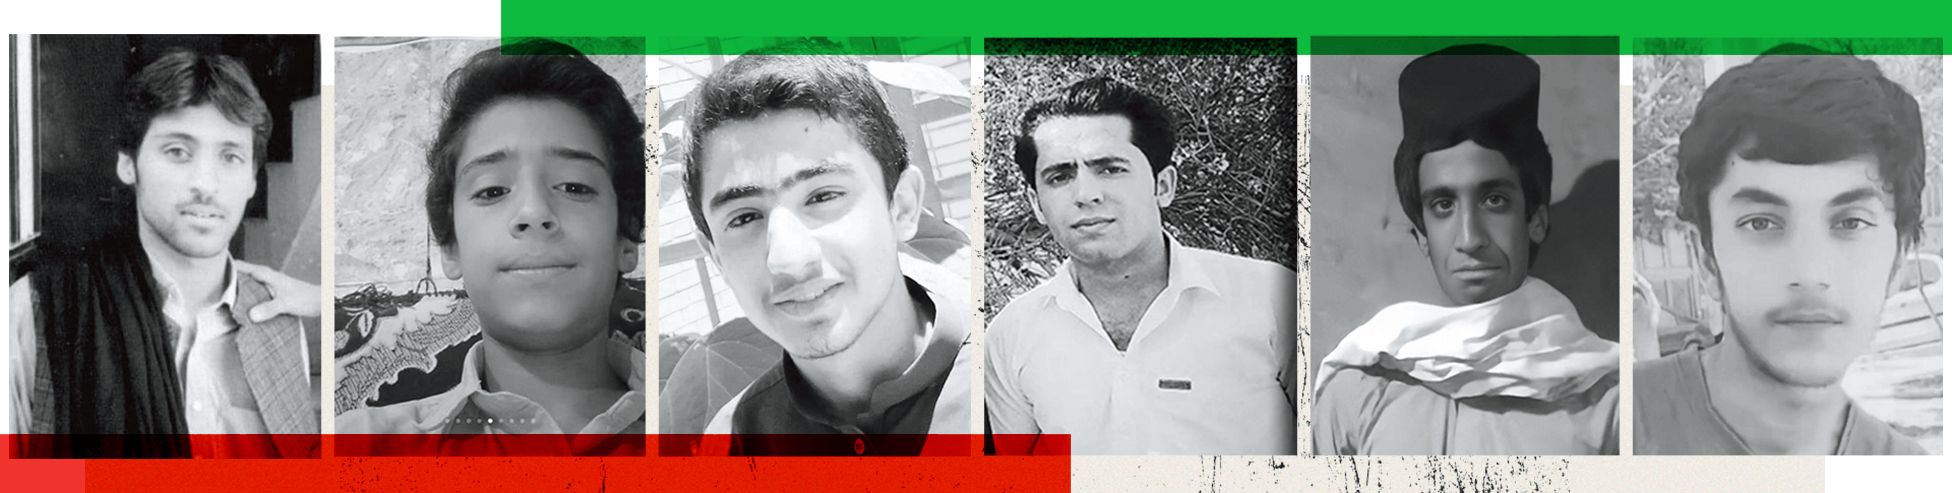 صور بعض القتلى من مقاطعة سيستان بلوشستان